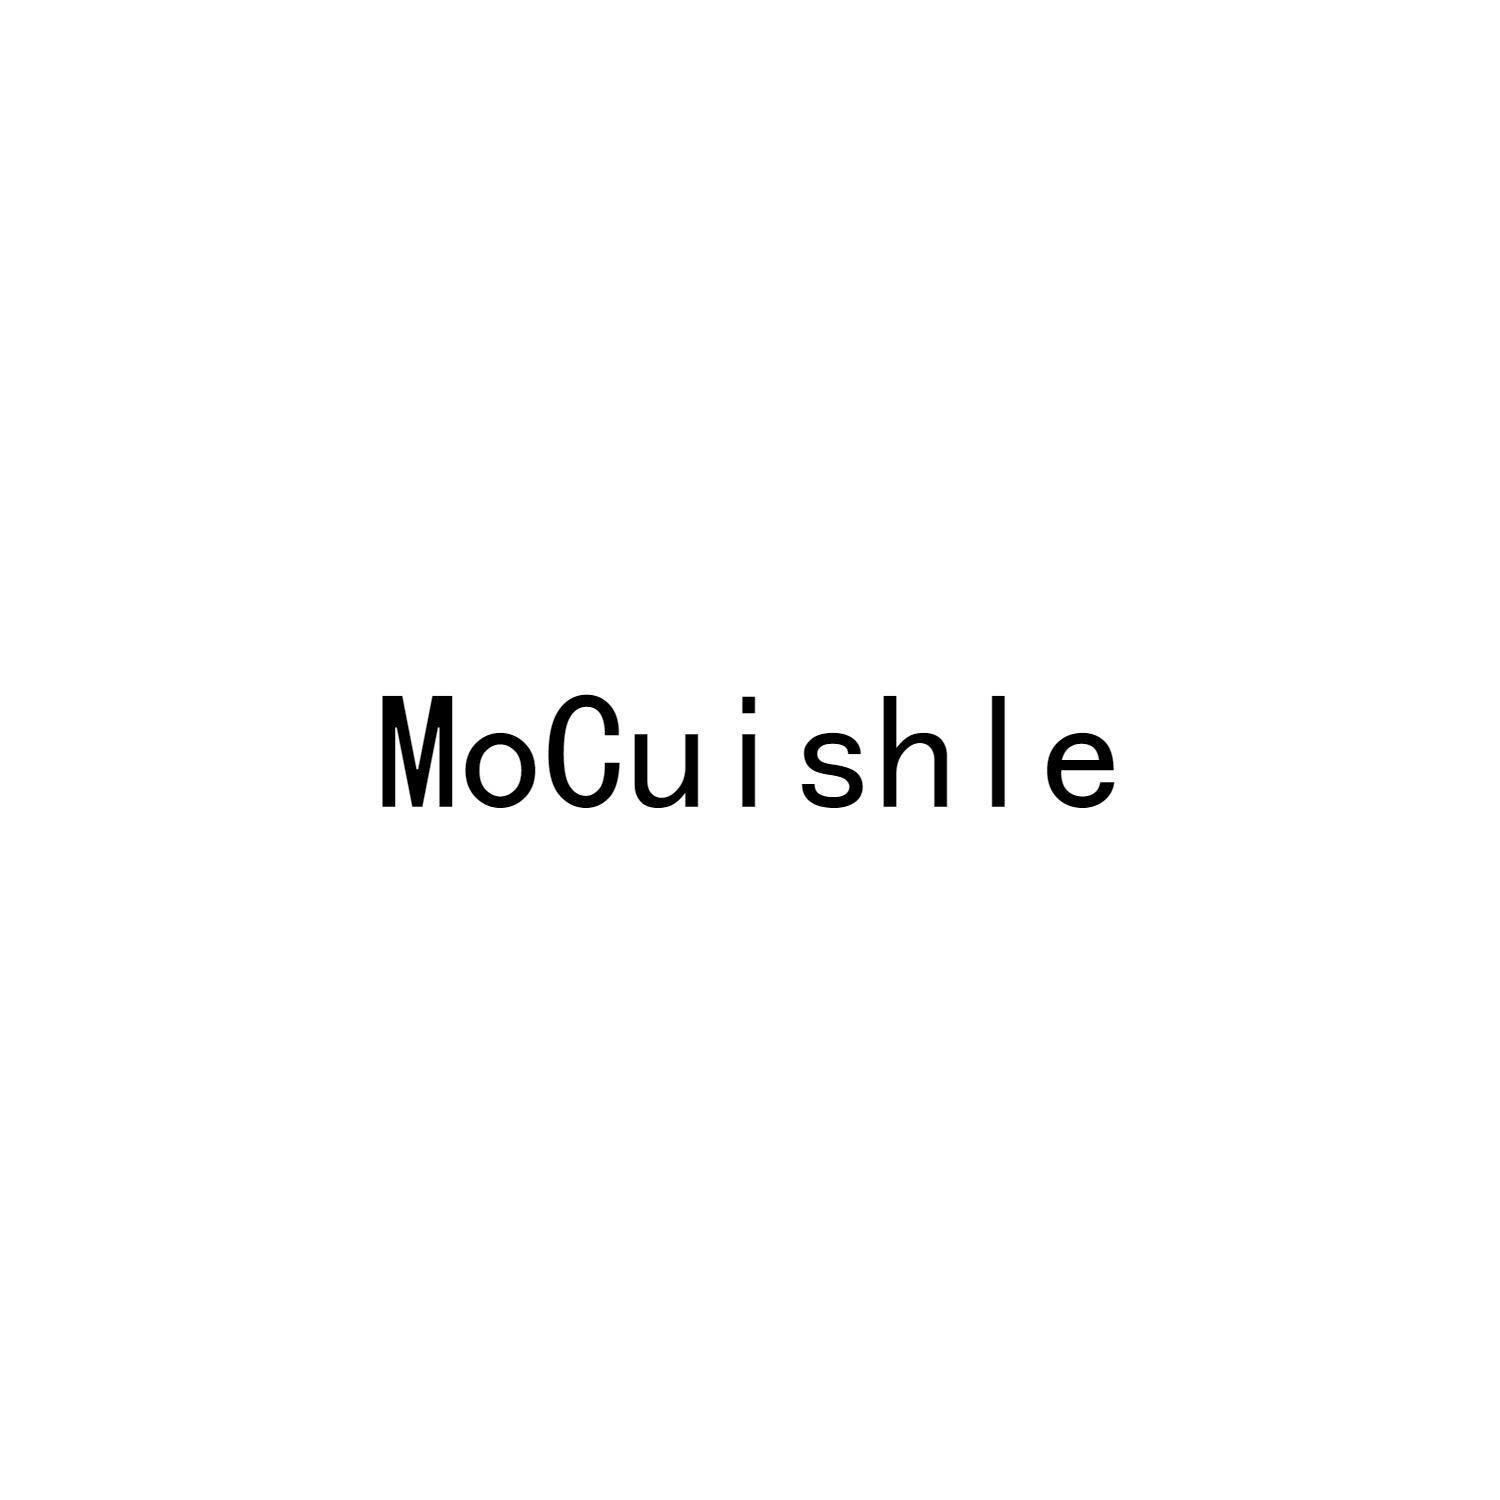 MOCUISHLE